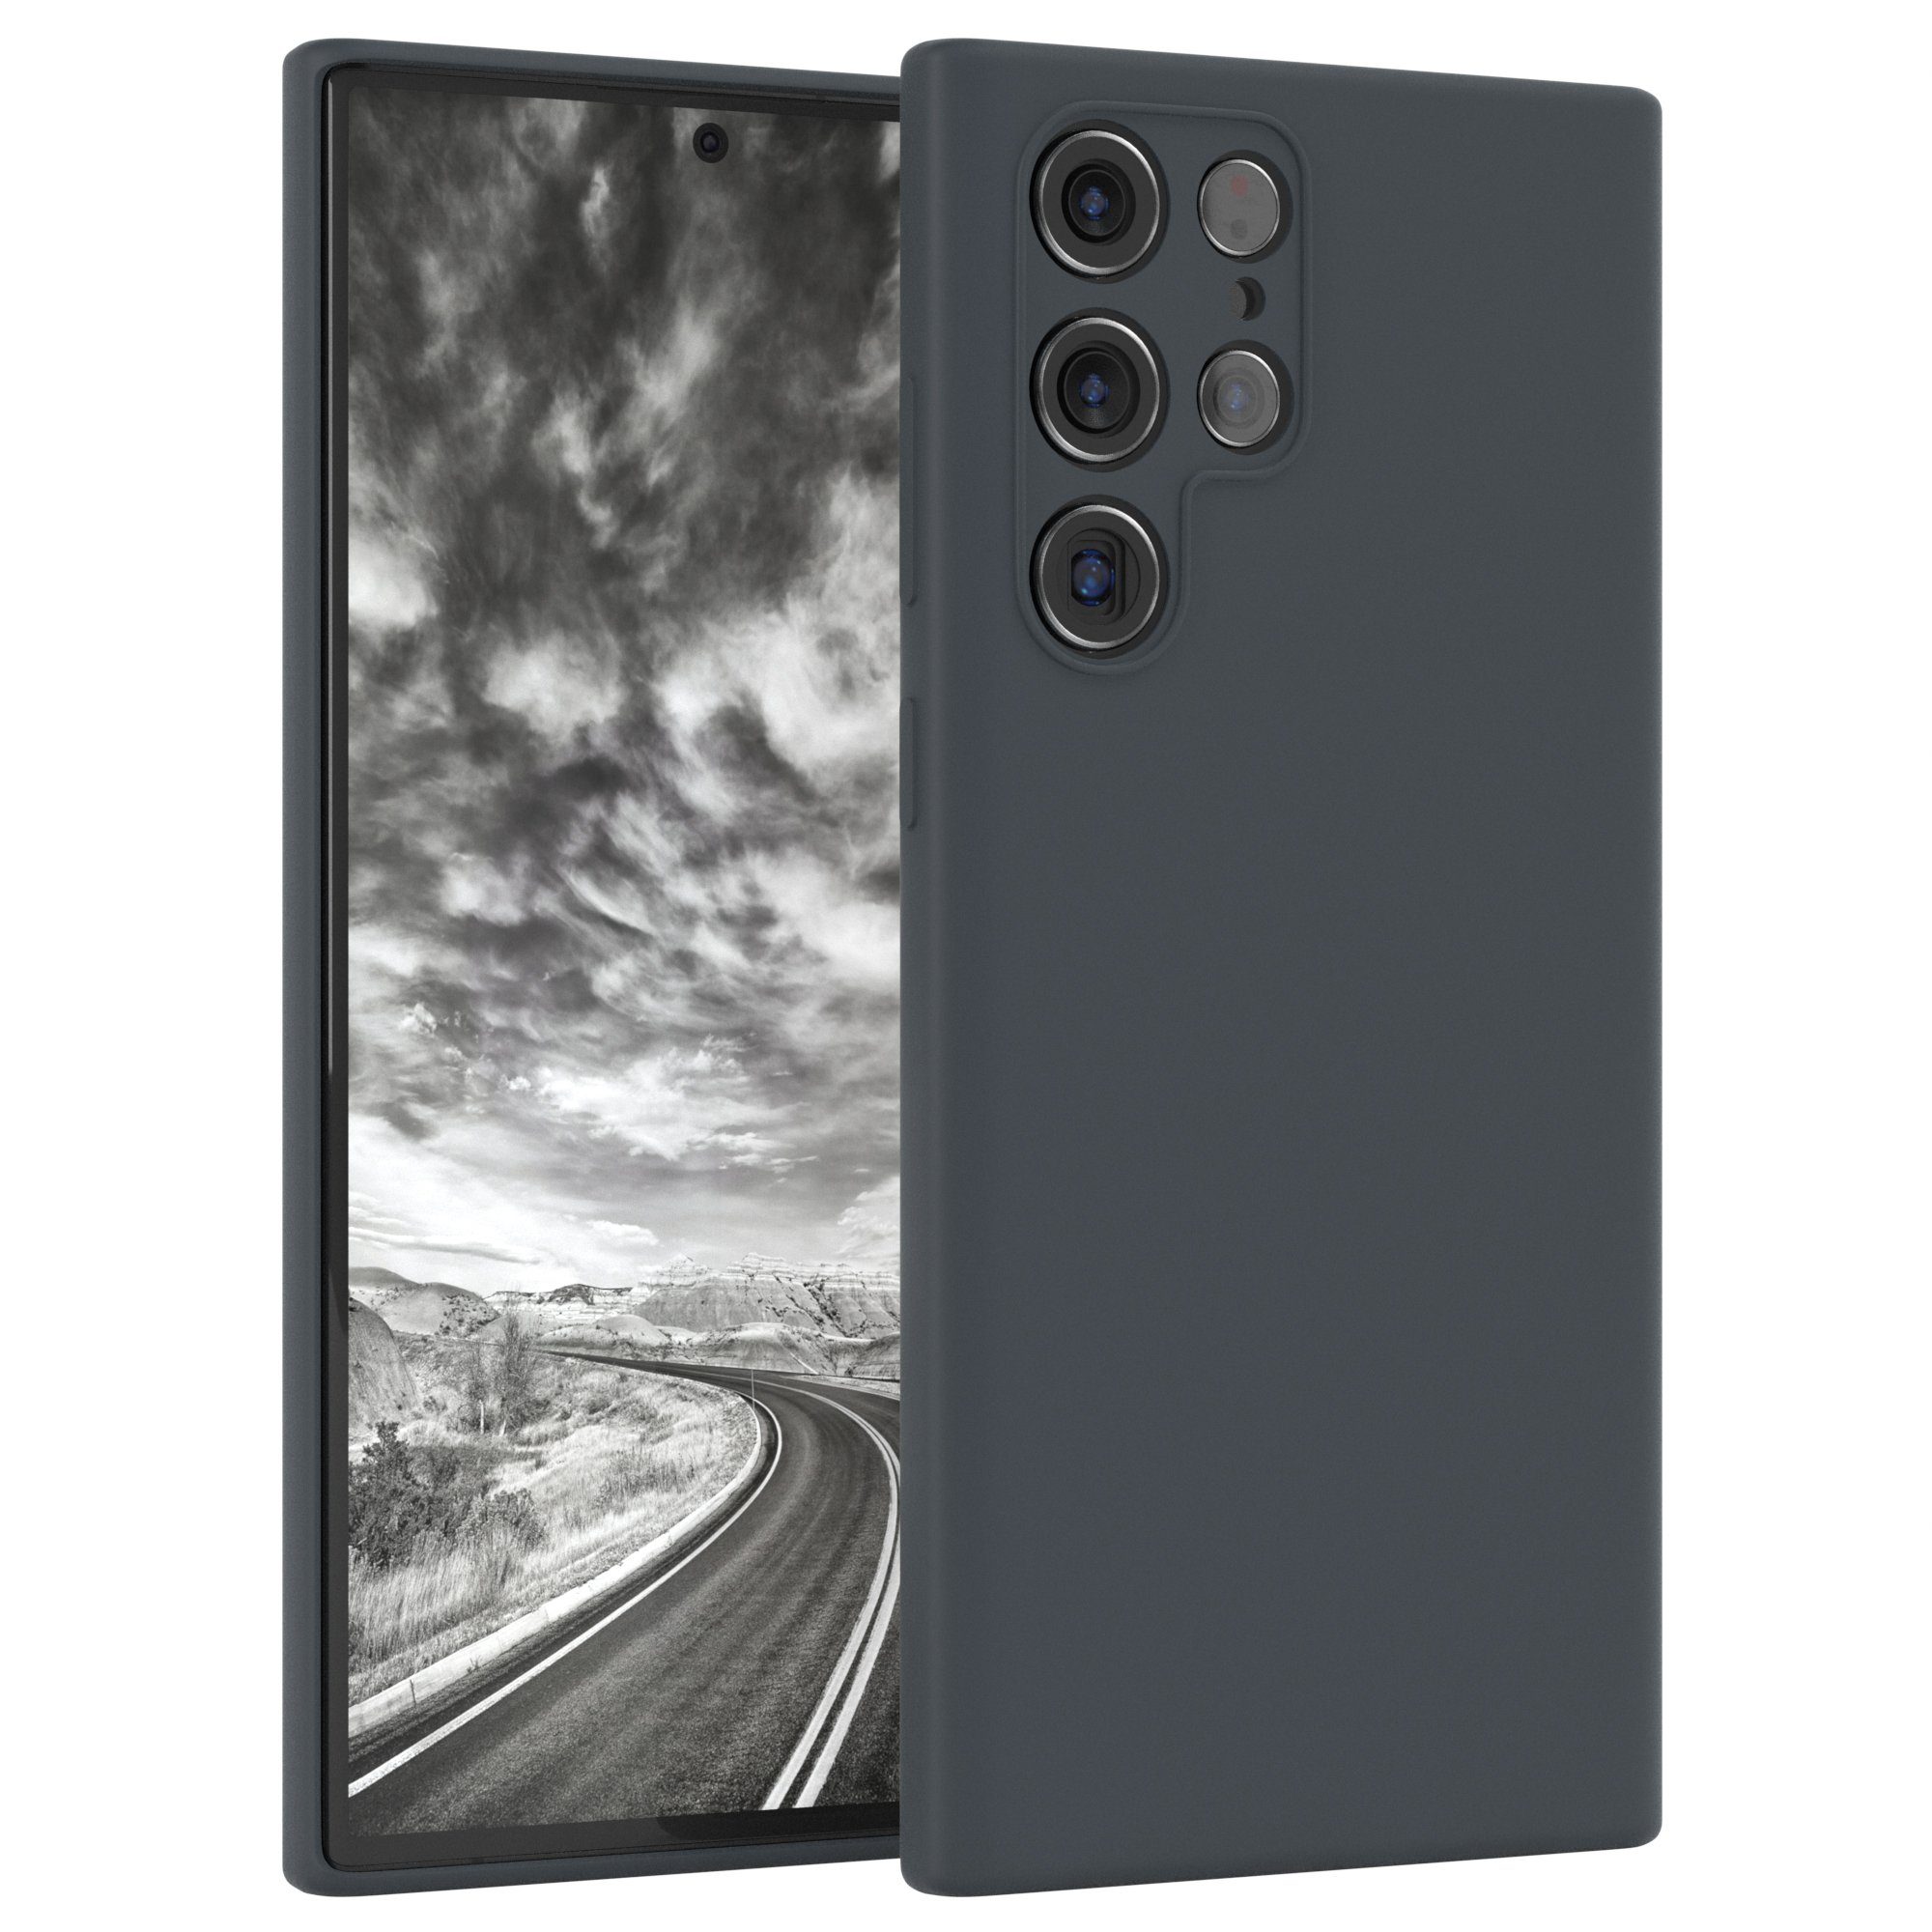 EAZY CASE Handyhülle Samsung Galaxy S22 Ultra 5G Premium Silicon Case dark Gray 09 6,8 Zoll, Schutzhülle mit Kameraschutz Back Cover Hülle Slimcover Anthrazit Grau